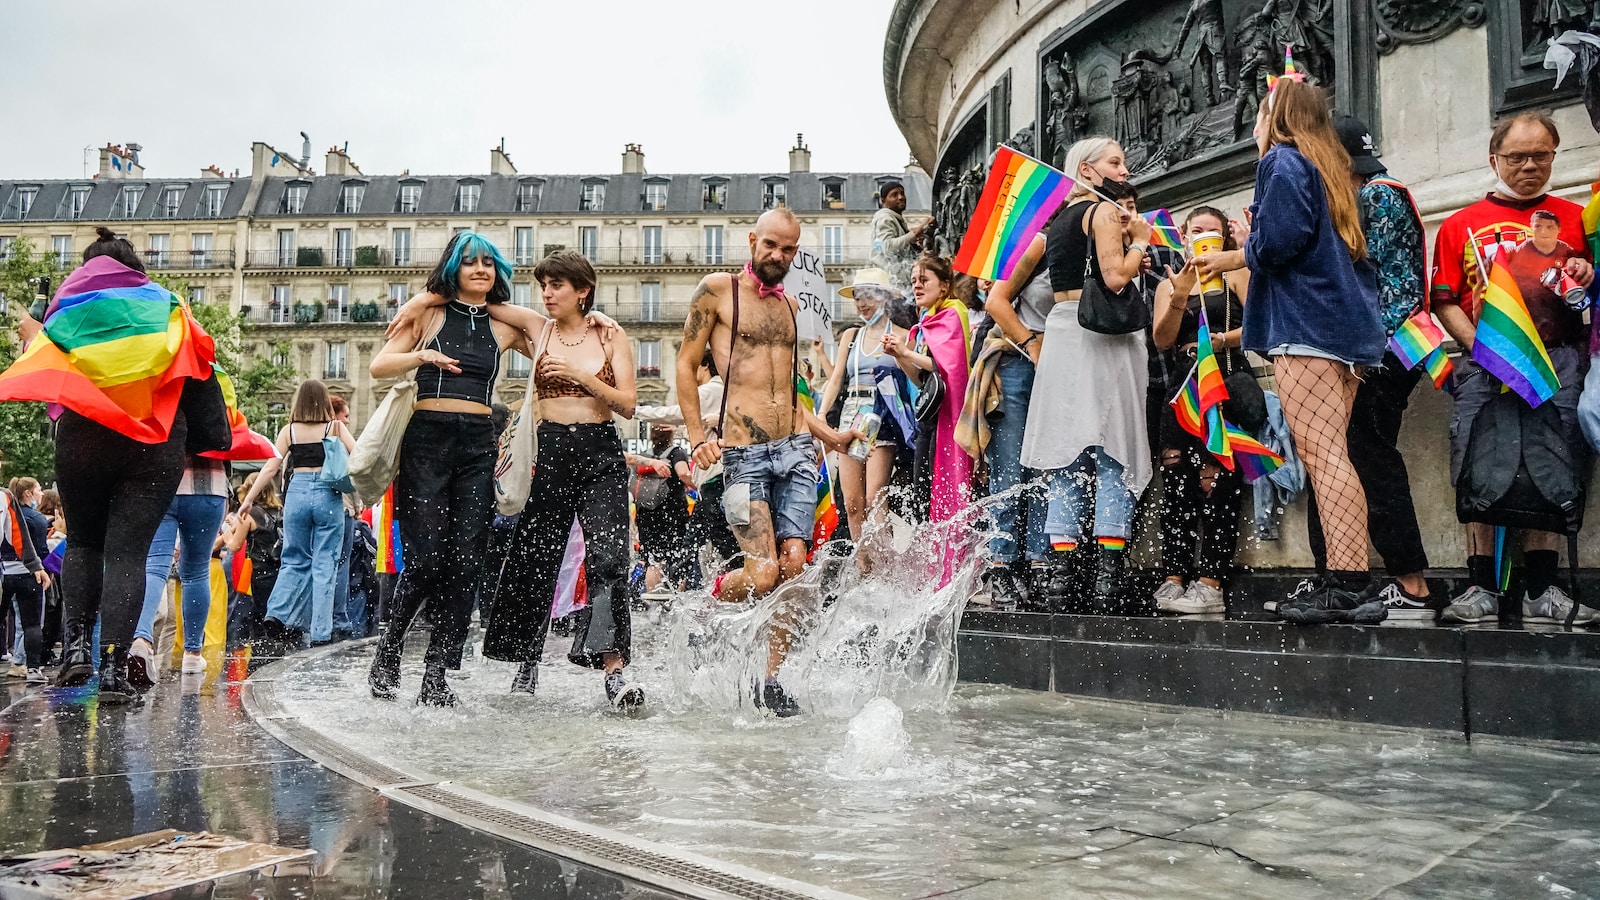 Les Dates des Prides en France en 2023 : Calendrier Complet